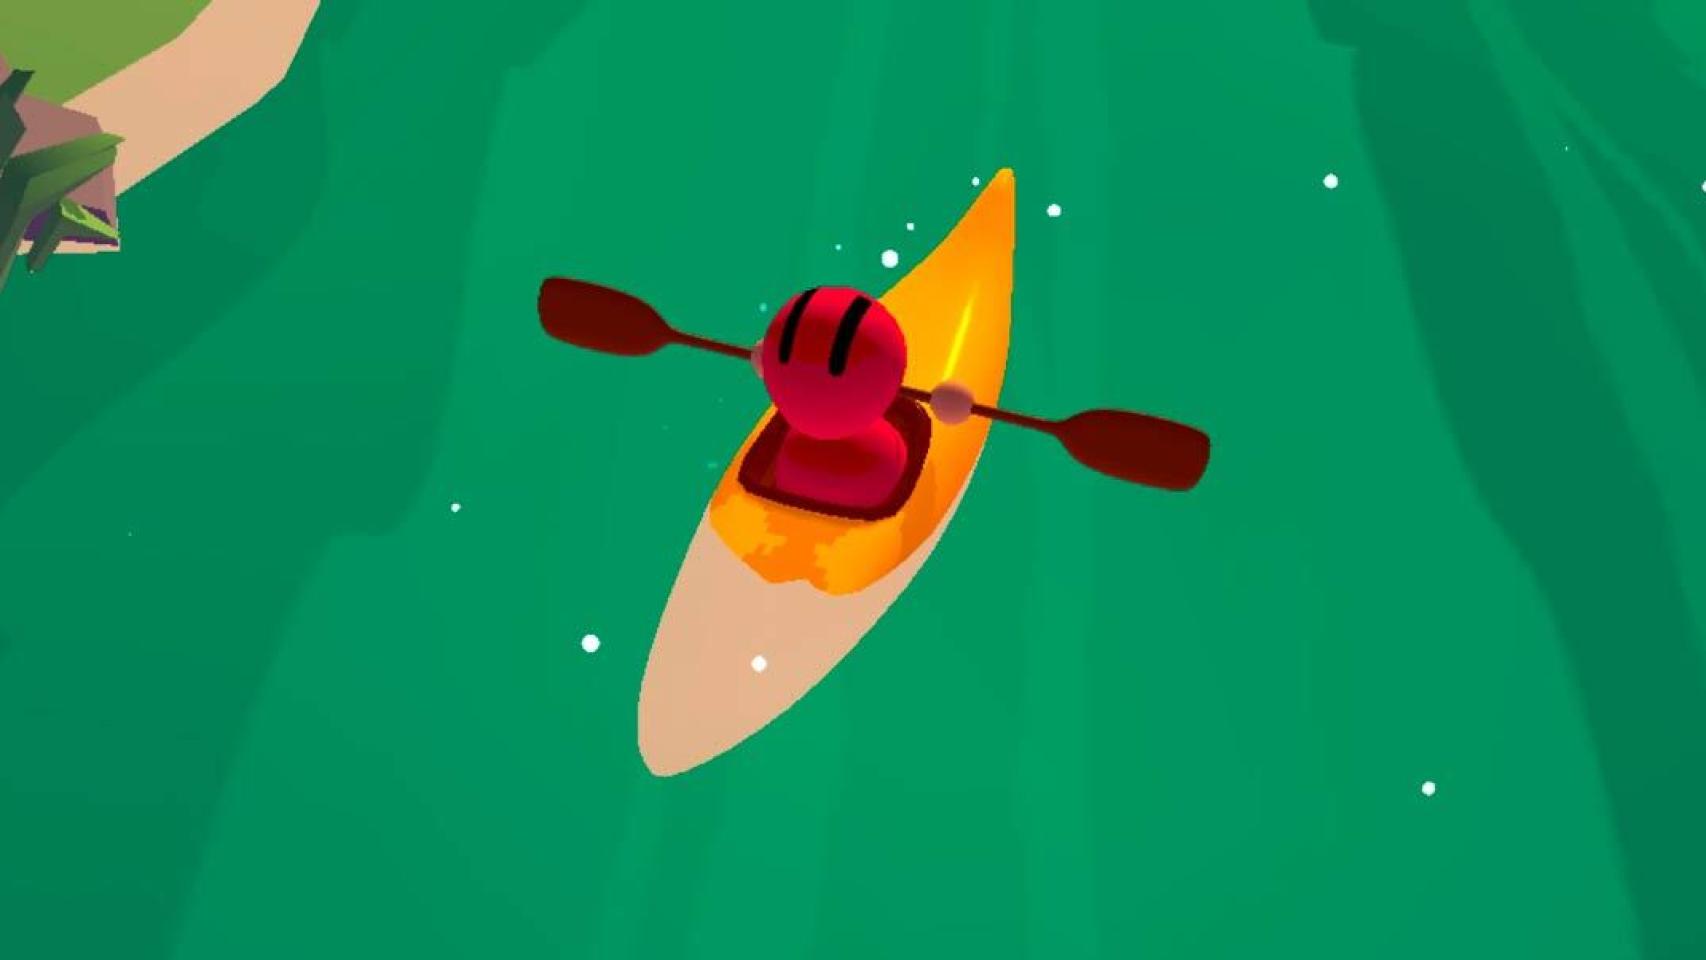 Lucha contra el agua en este adictivo juego de kayak: Row Row